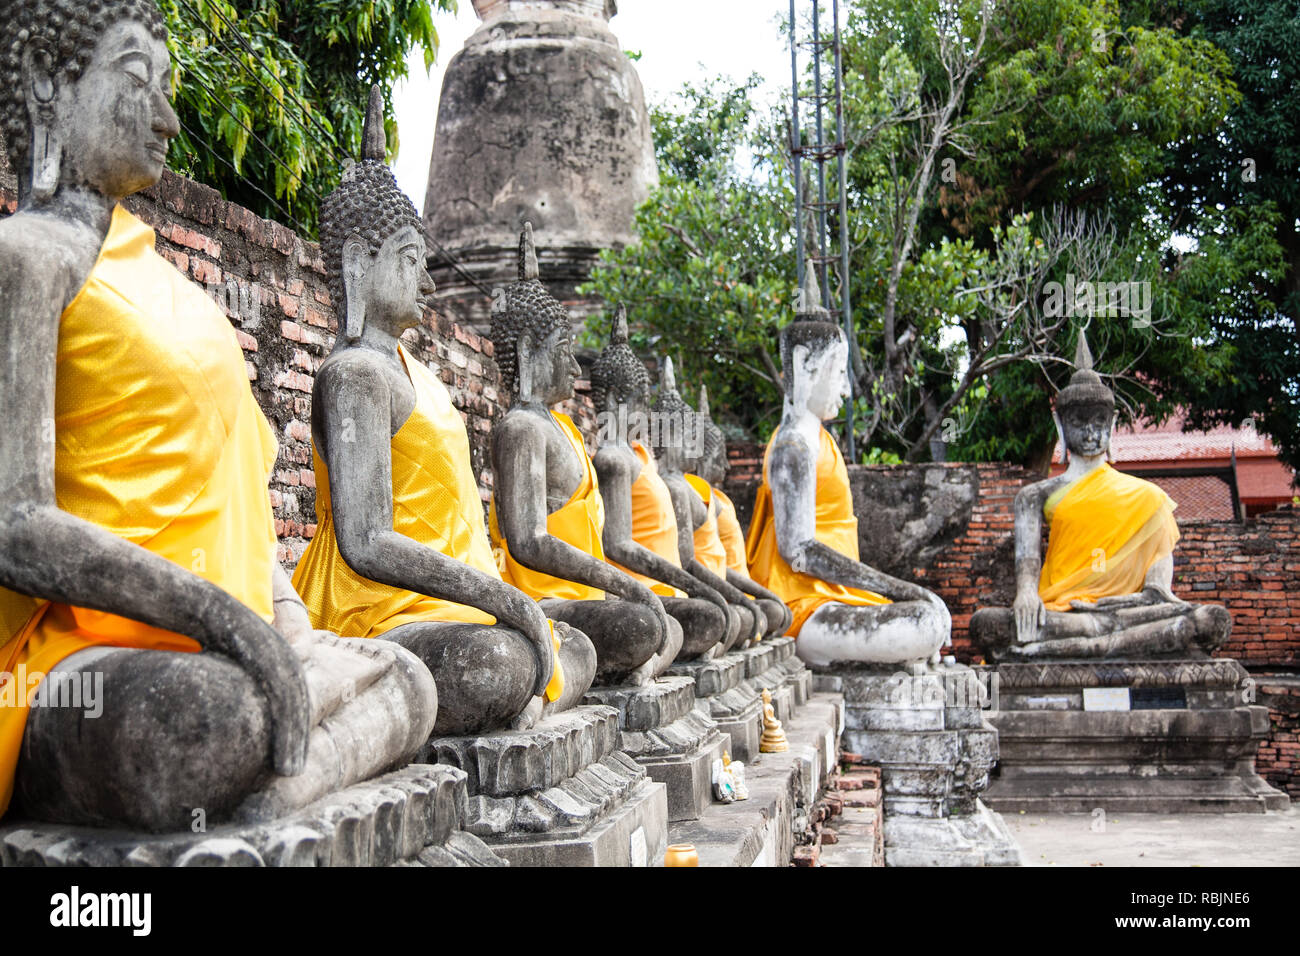 Les apprentis du Bouddha de Wat Yai Chai Mongkol, Thaïlande Banque D'Images